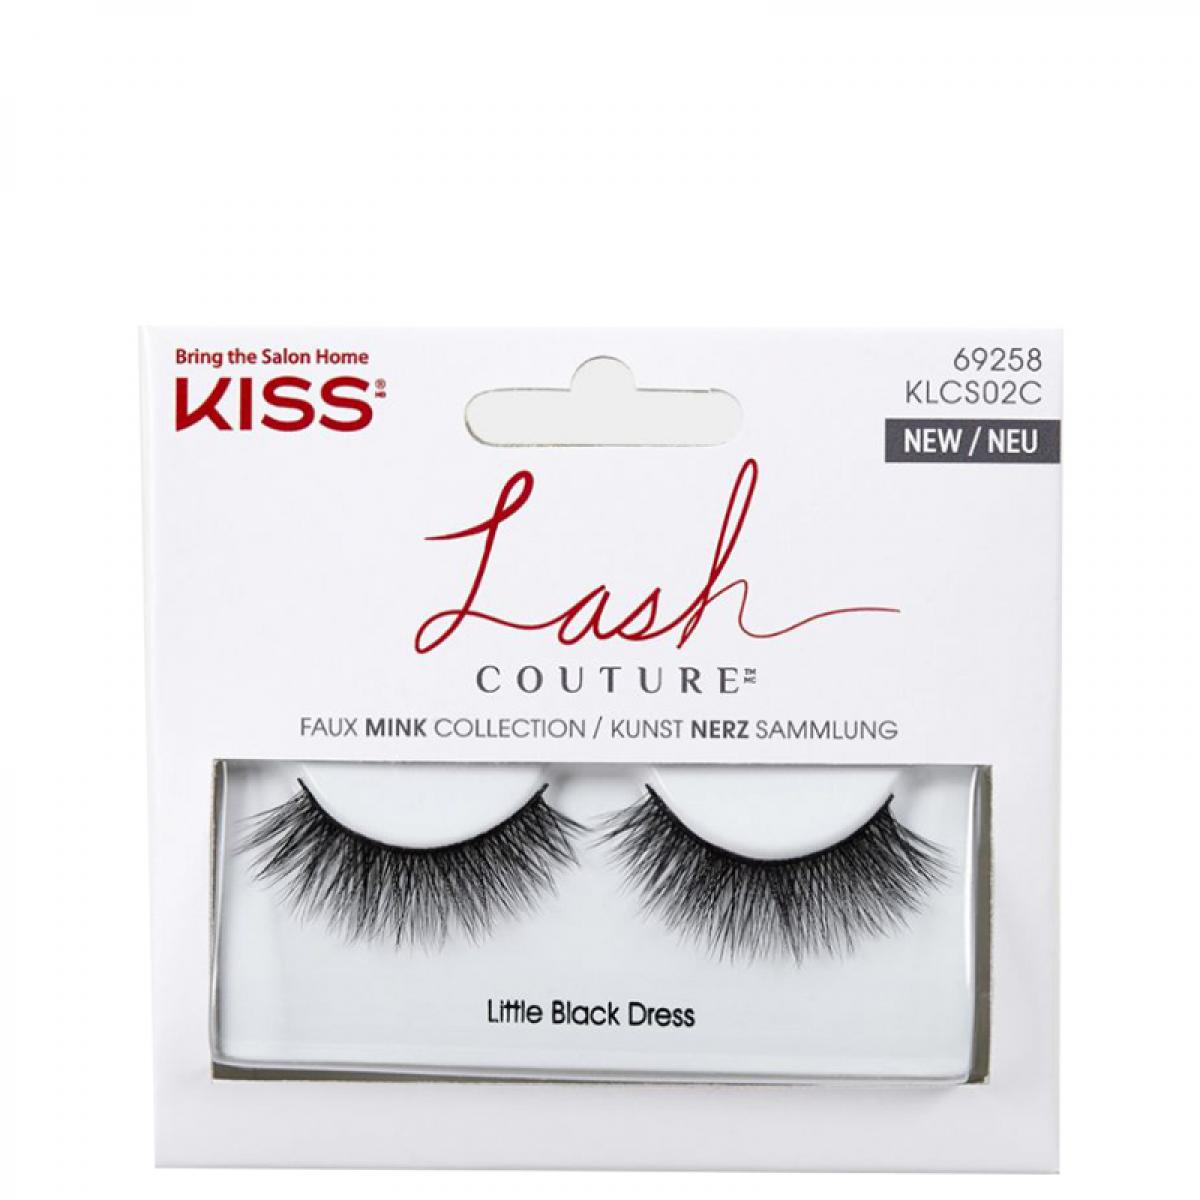 مژه مصنوعی مدل KLCS02 - Kiss Lash Couture Faux Mink Collection KLCS02